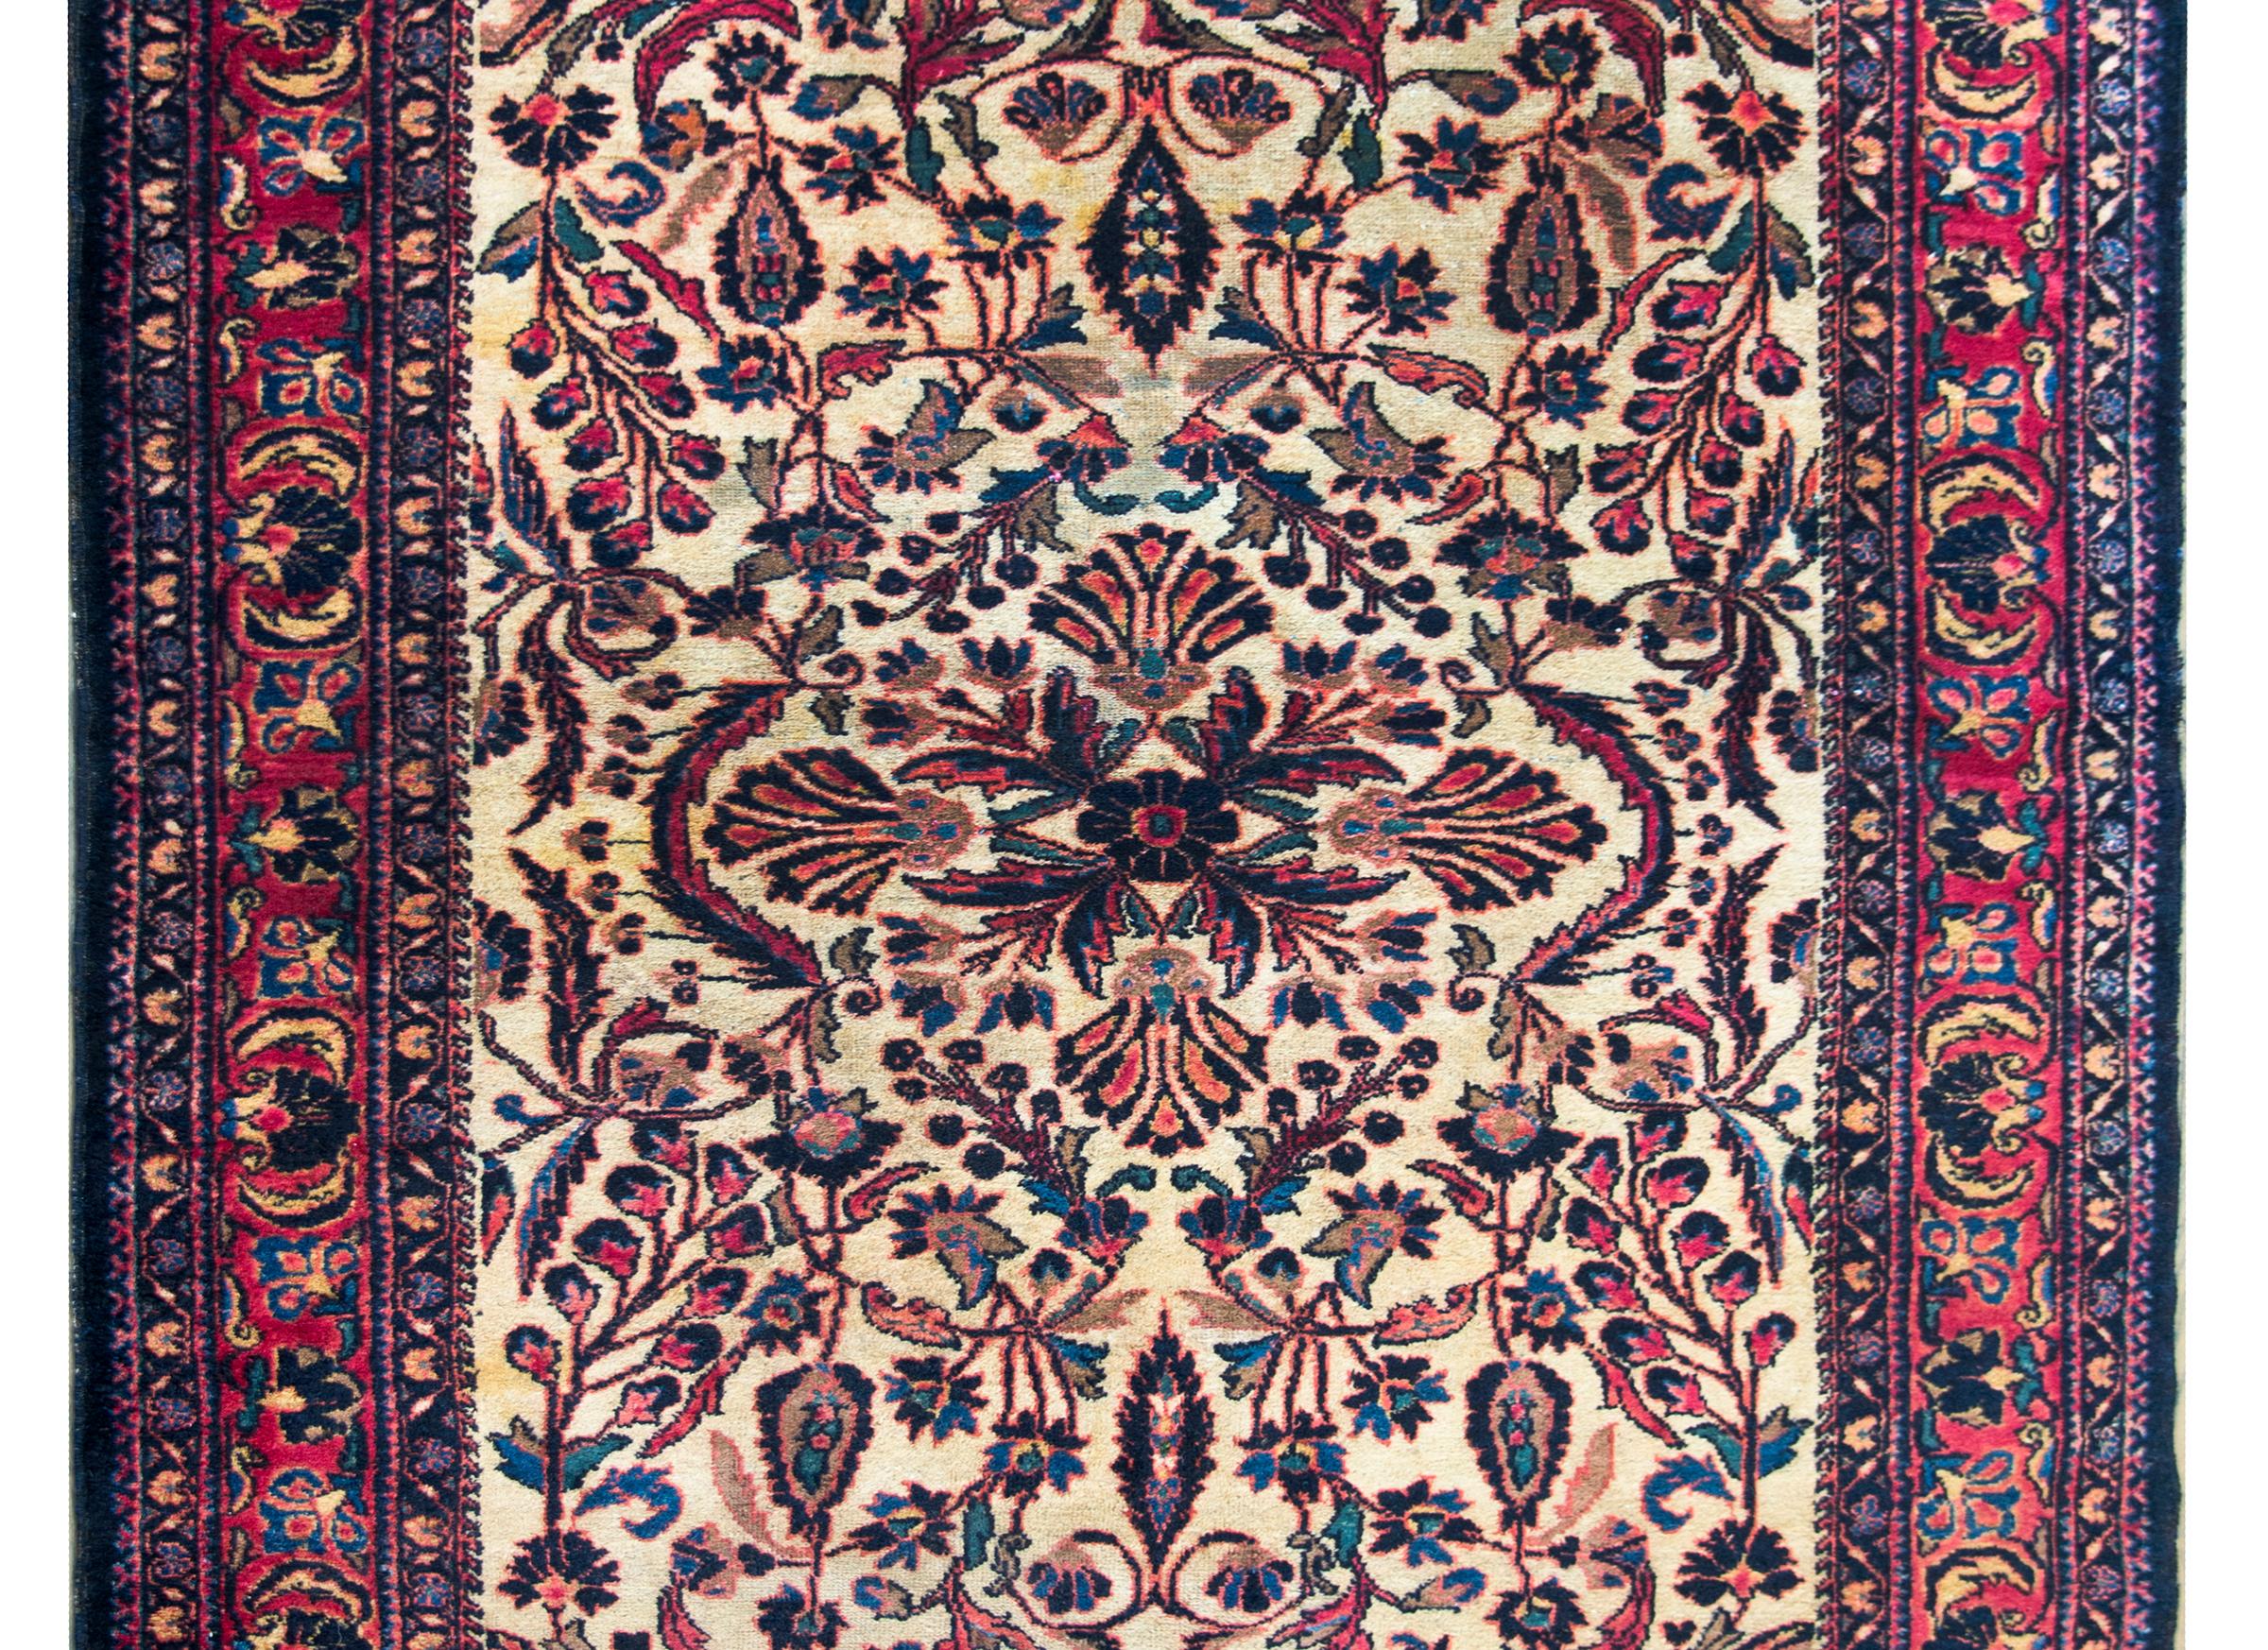 Ein wunderschöner persischer Lilihan-Teppich aus dem frühen 20. Jahrhundert mit einem herrlichen, gespiegelten Blumenmuster mit einem zentralen Medaillon inmitten eines Feldes aus kunstvoll gezeichneten Ranken und Blumen, die alle in Cranberry,